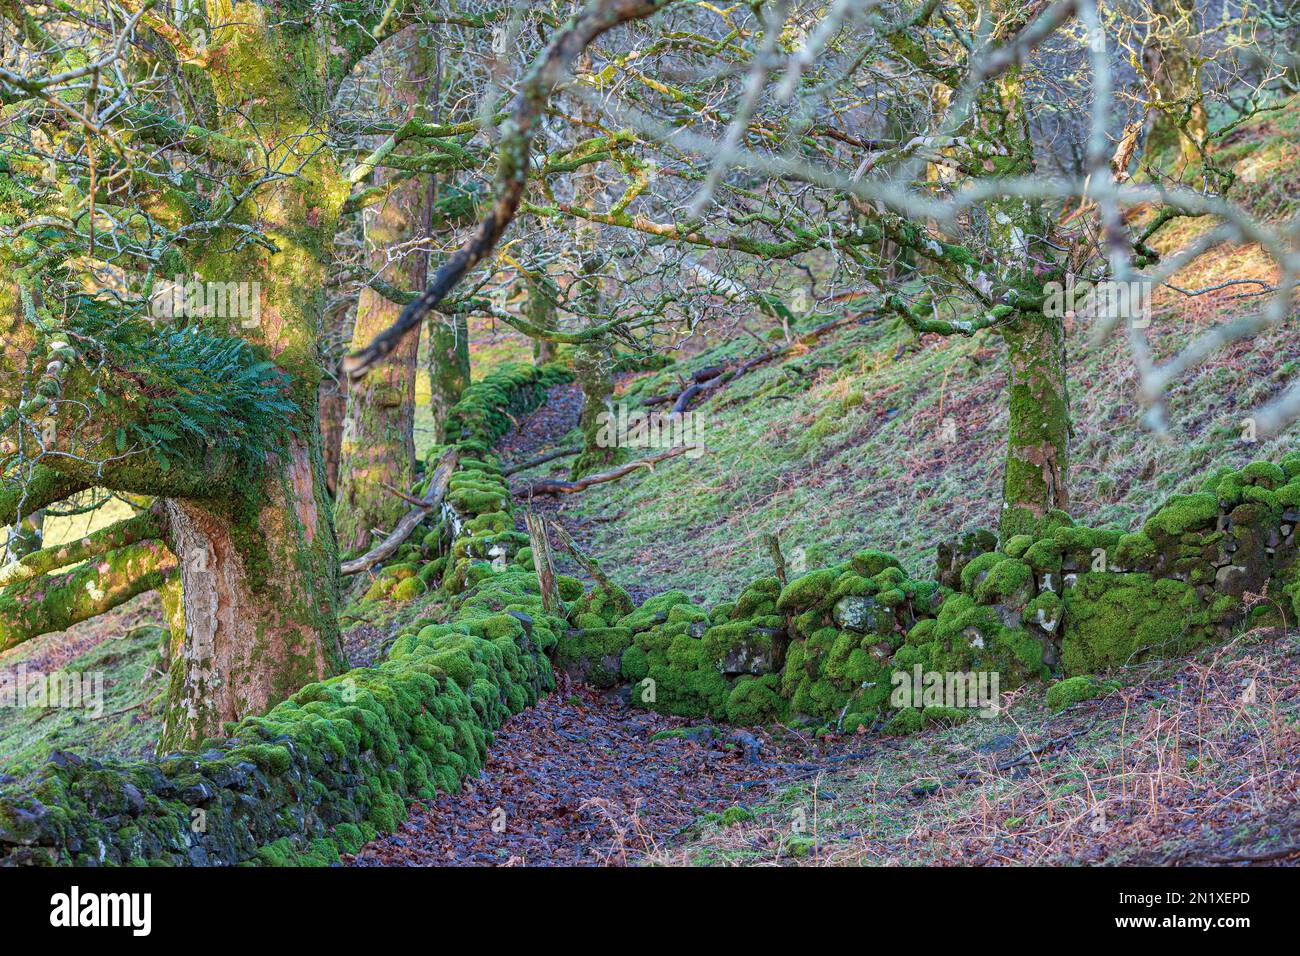 Antiguo muro de piedra en Movern, Escocia, debajo de los árboles y cubierto de musgo, helechos y líquenes. Foto de stock